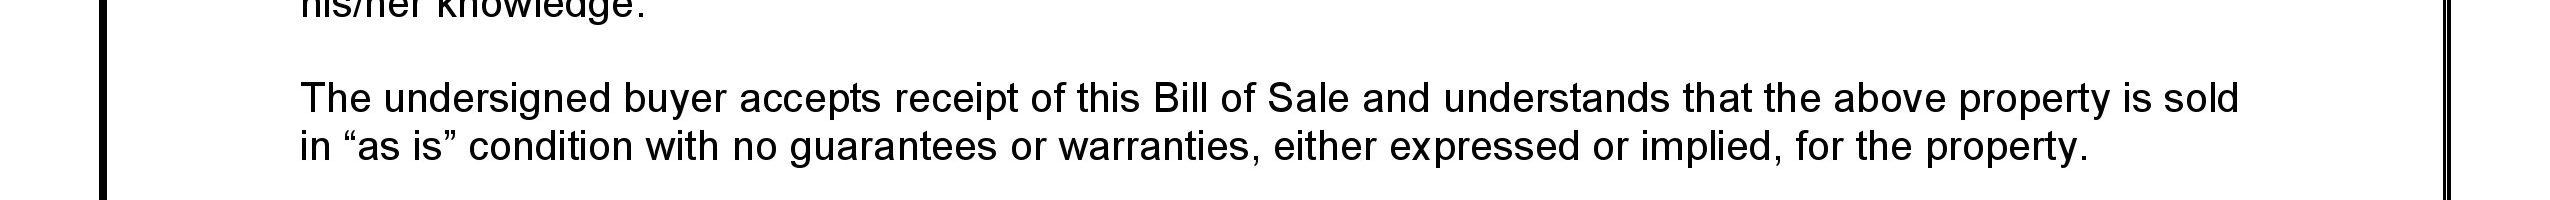 Blank Bill of Sale Form